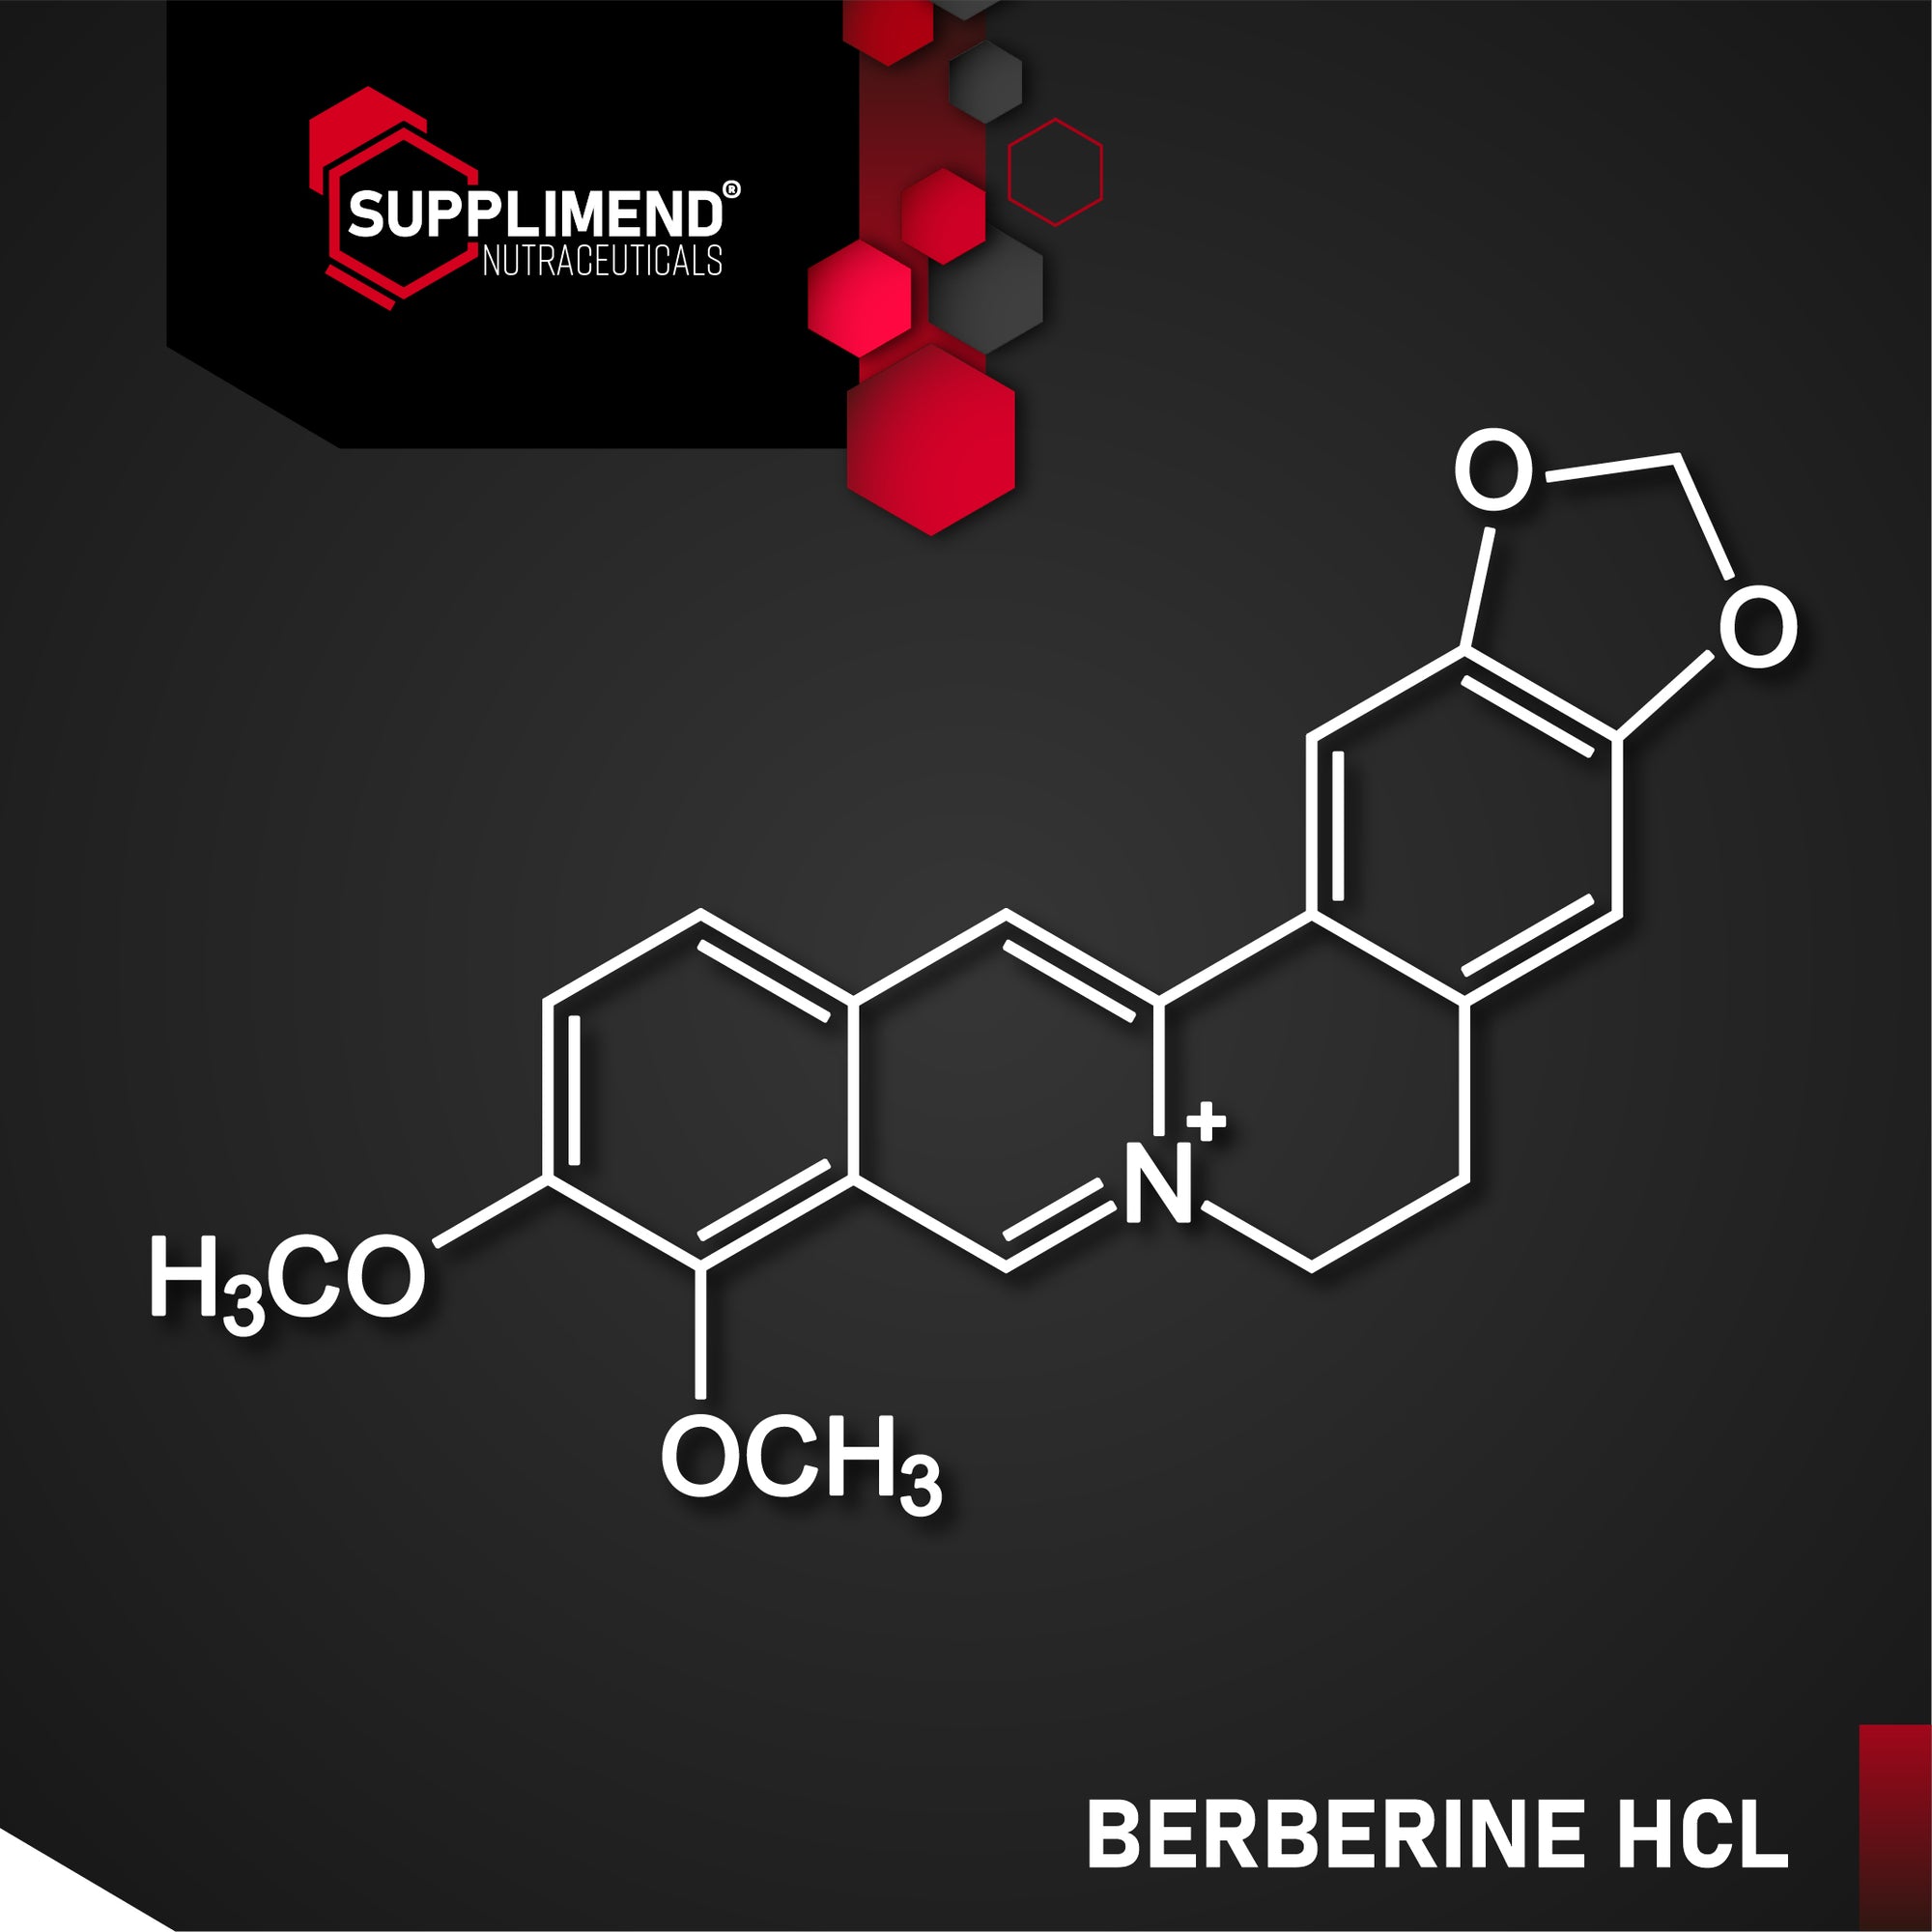 What is Berberine?